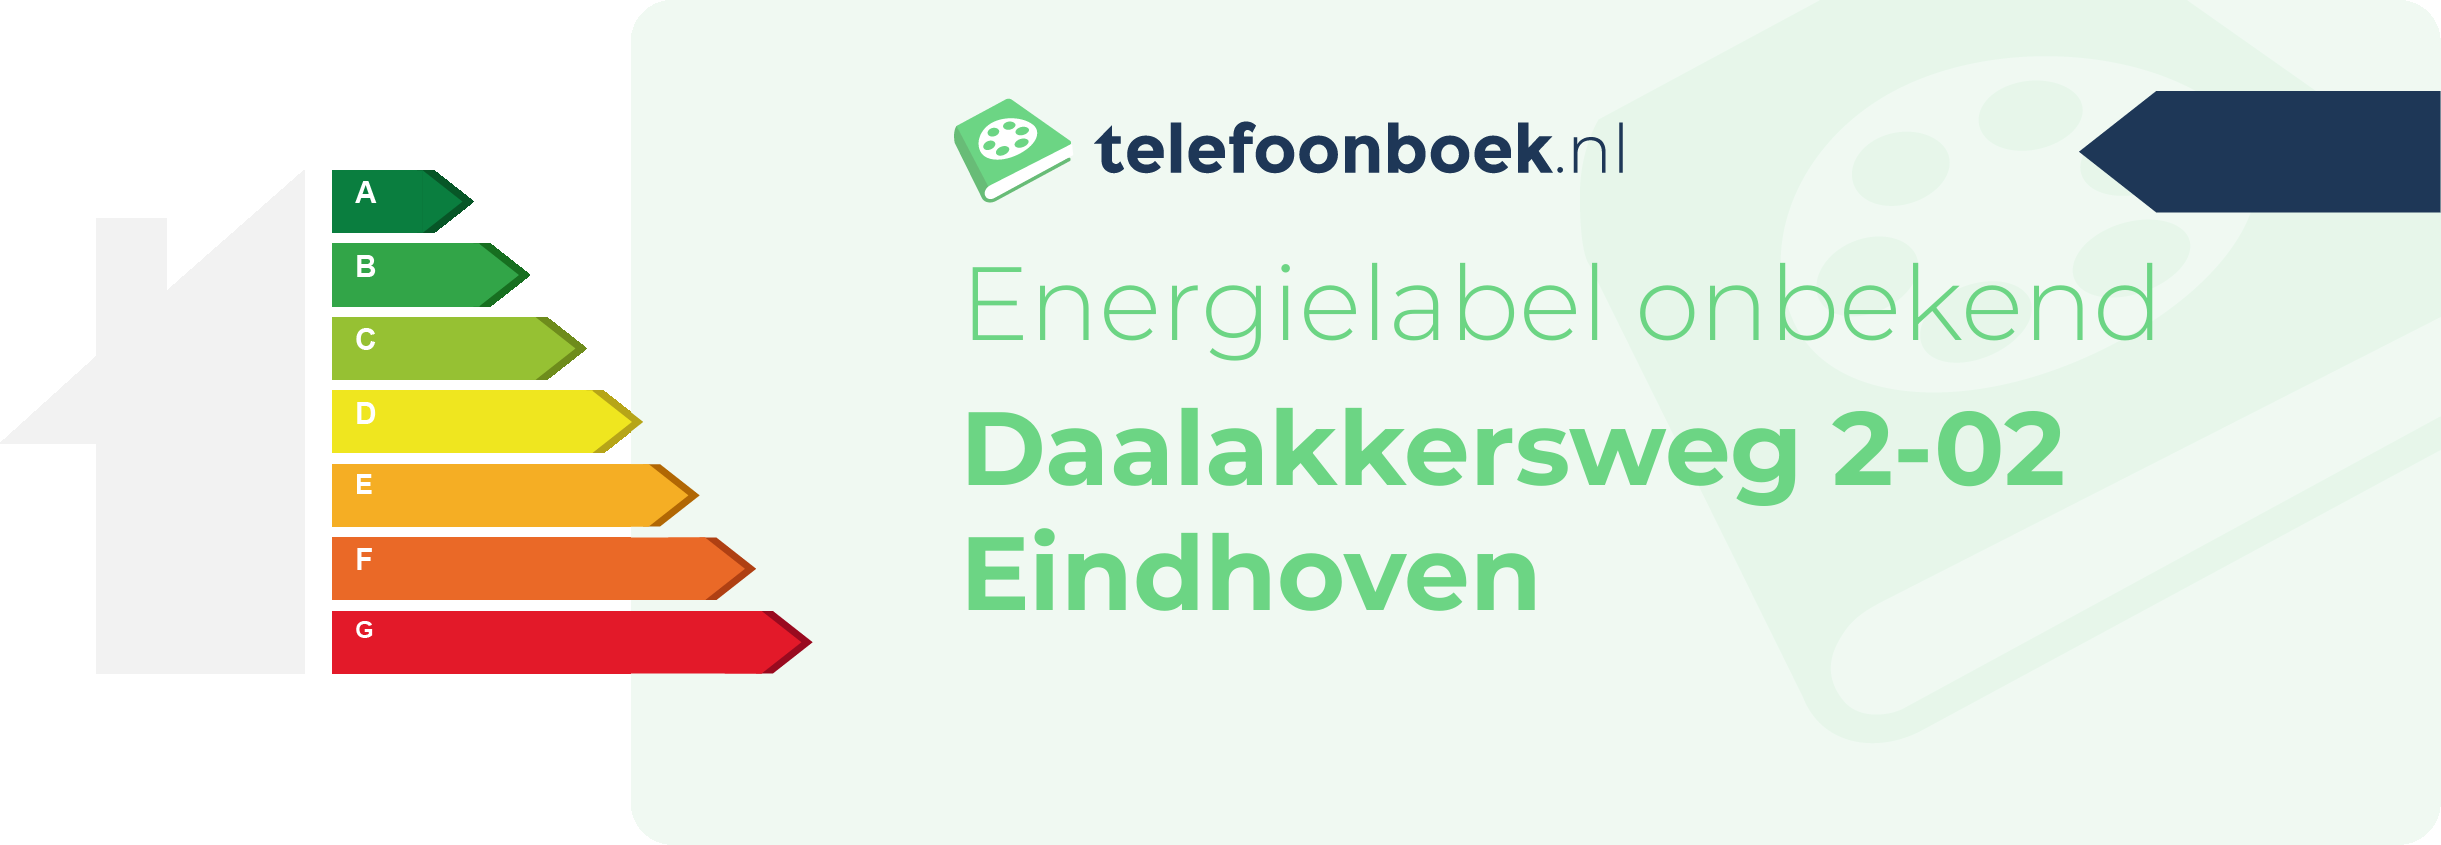 Energielabel Daalakkersweg 2-02 Eindhoven